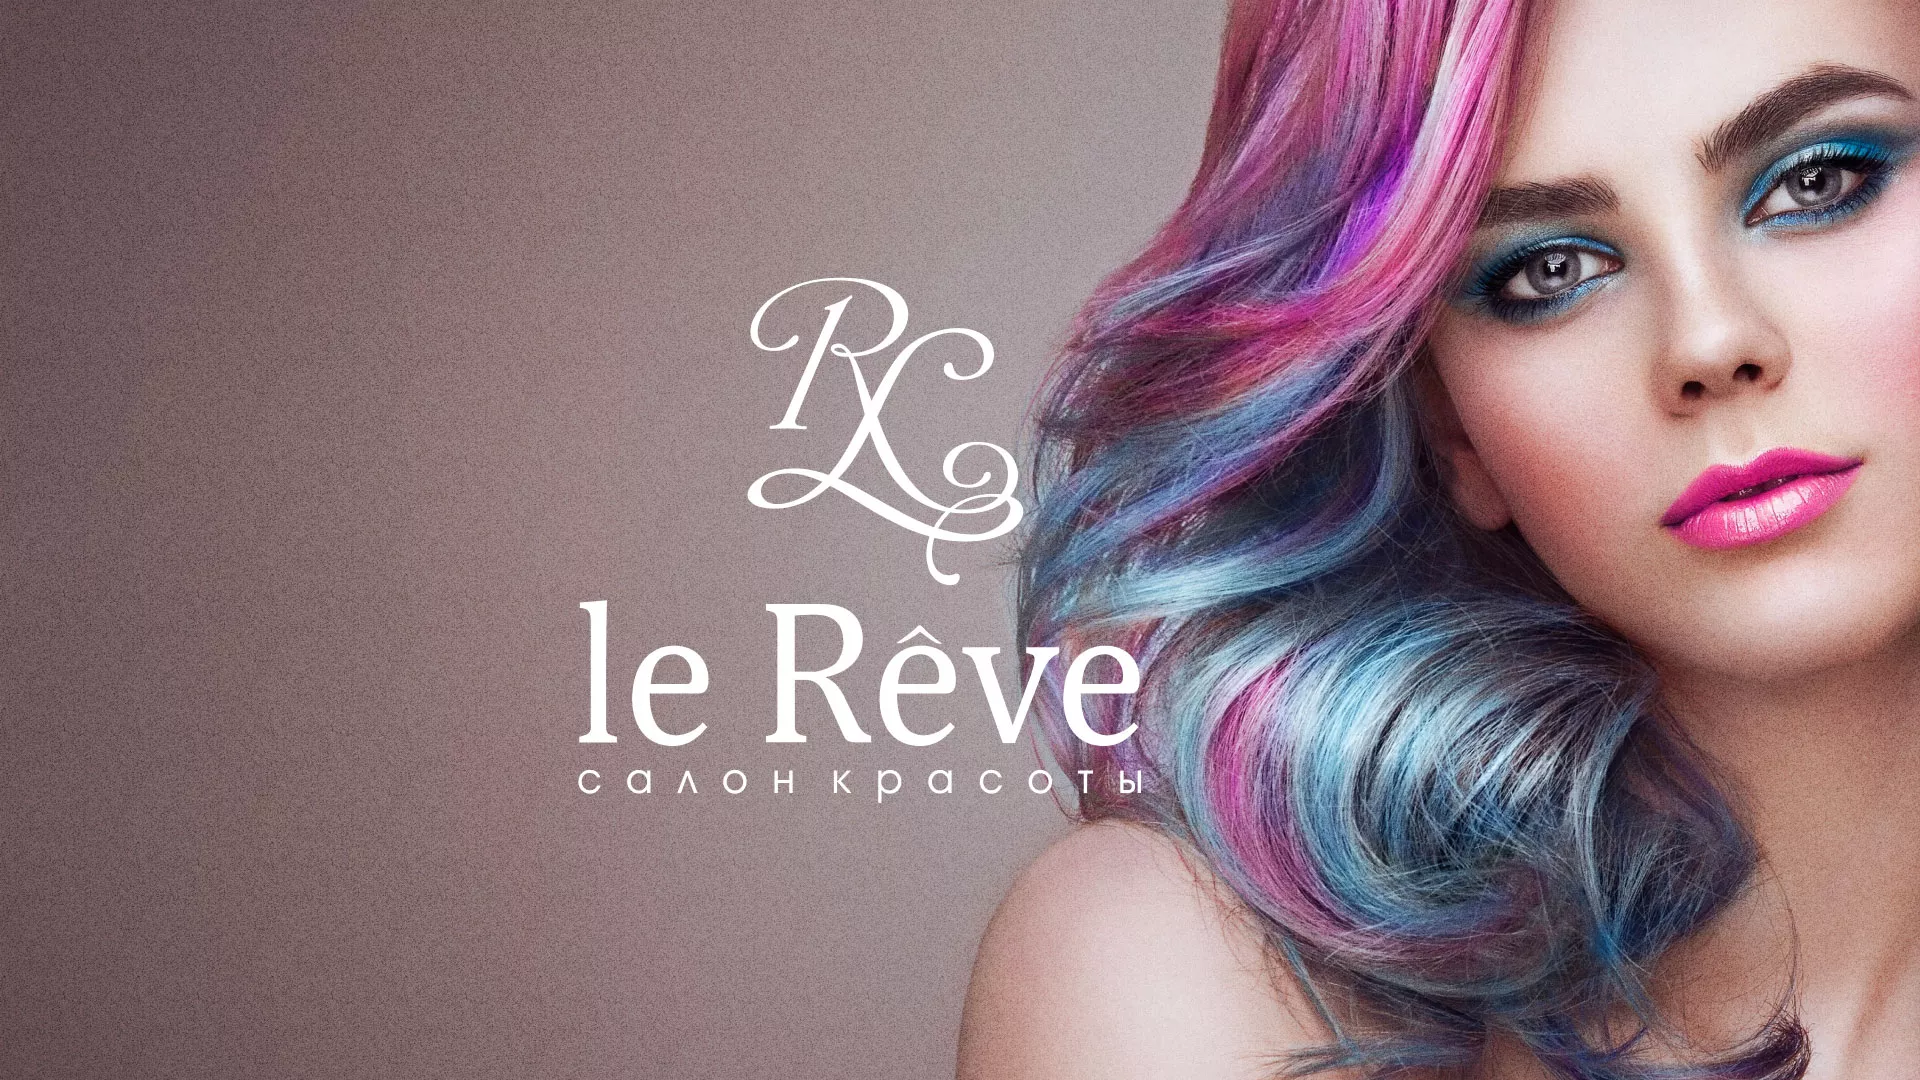 Создание сайта для салона красоты «Le Reve» в Унече